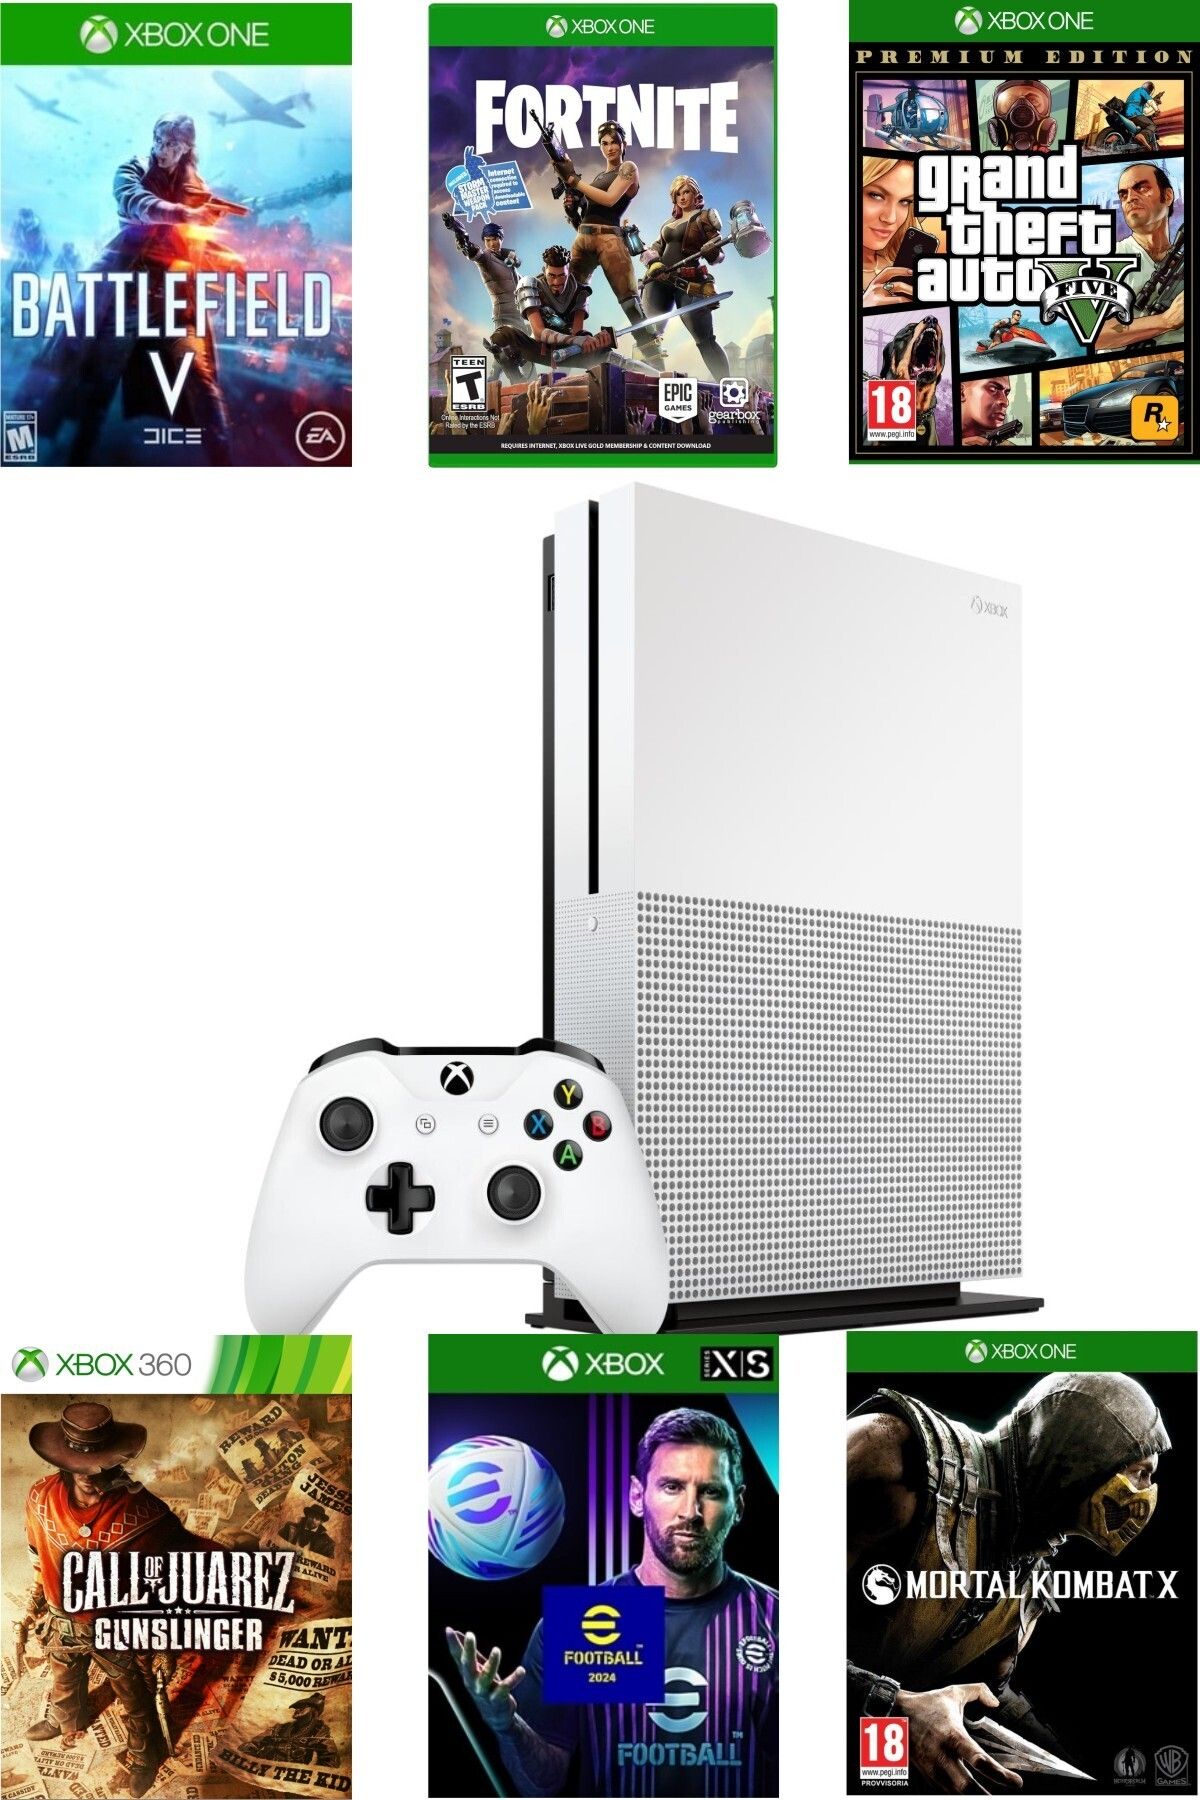 Microsoft XBOX One S 1 TB - Teşhir Cihazı 6 Ay Garantili - GTA 5 Dahil 10 Dijital Oyun Hediyeli